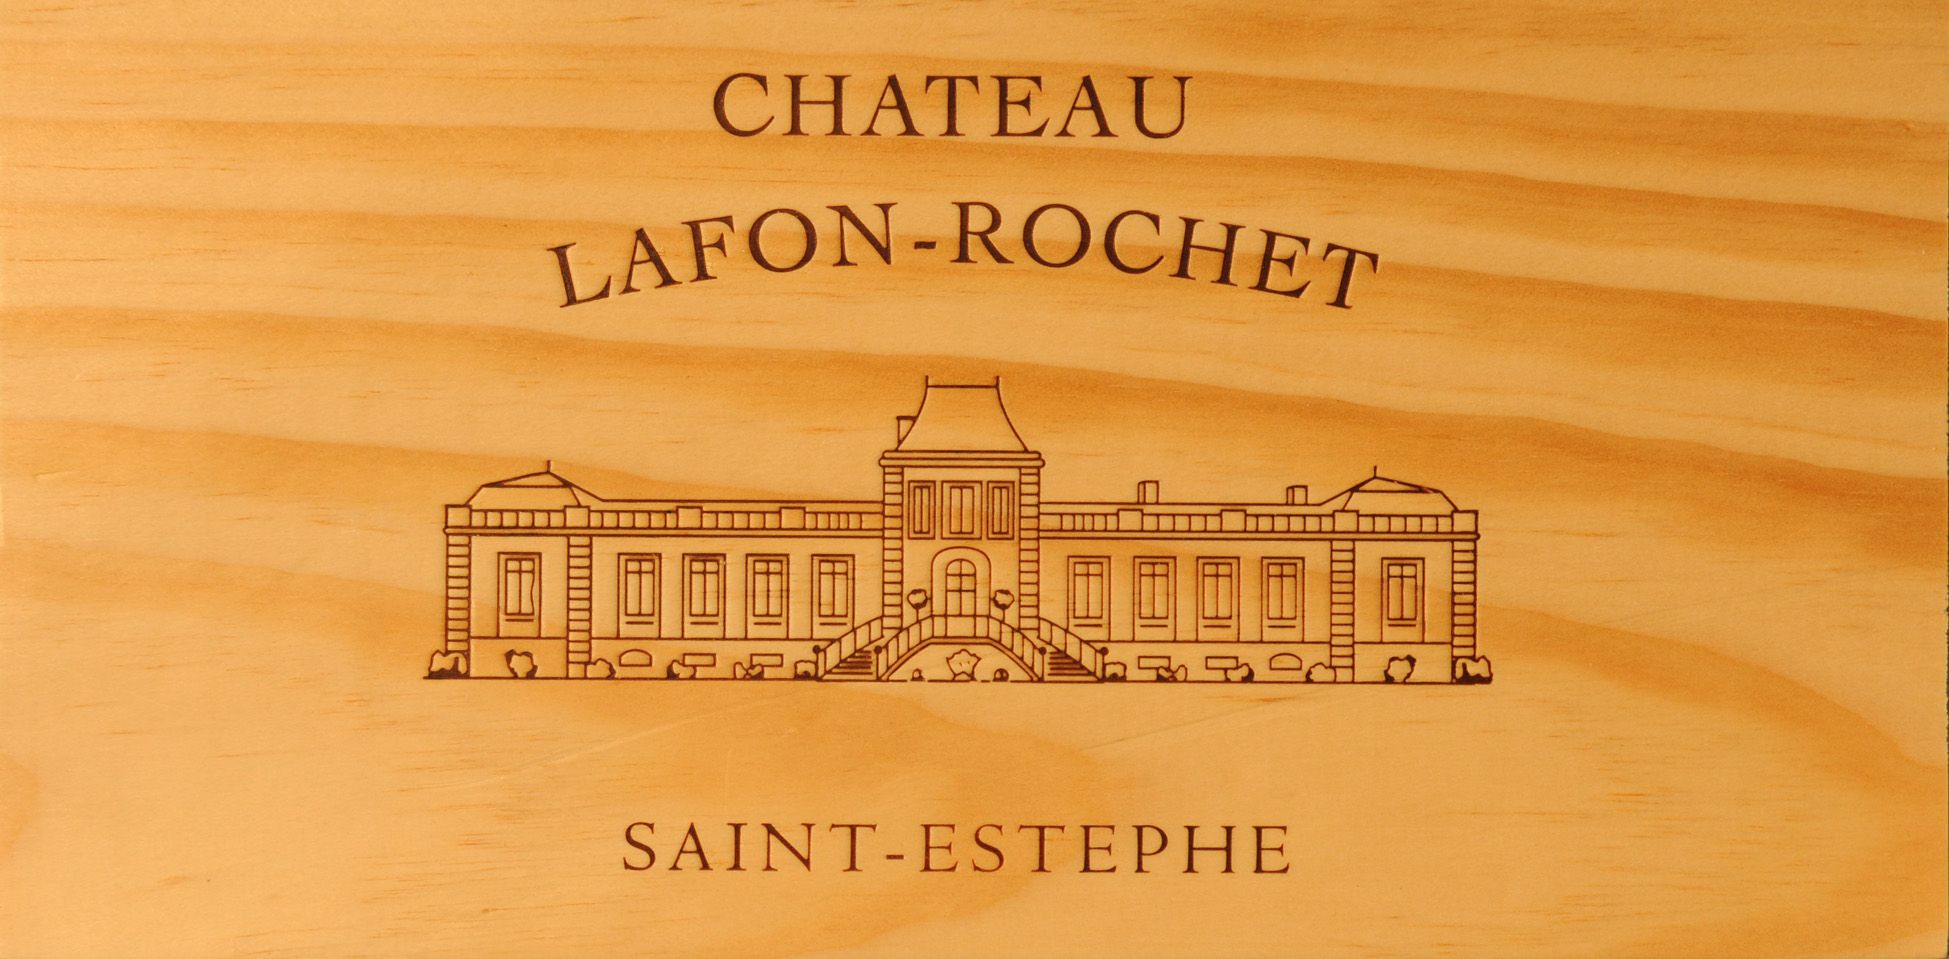 샤토 라퐁-로셰의 로고